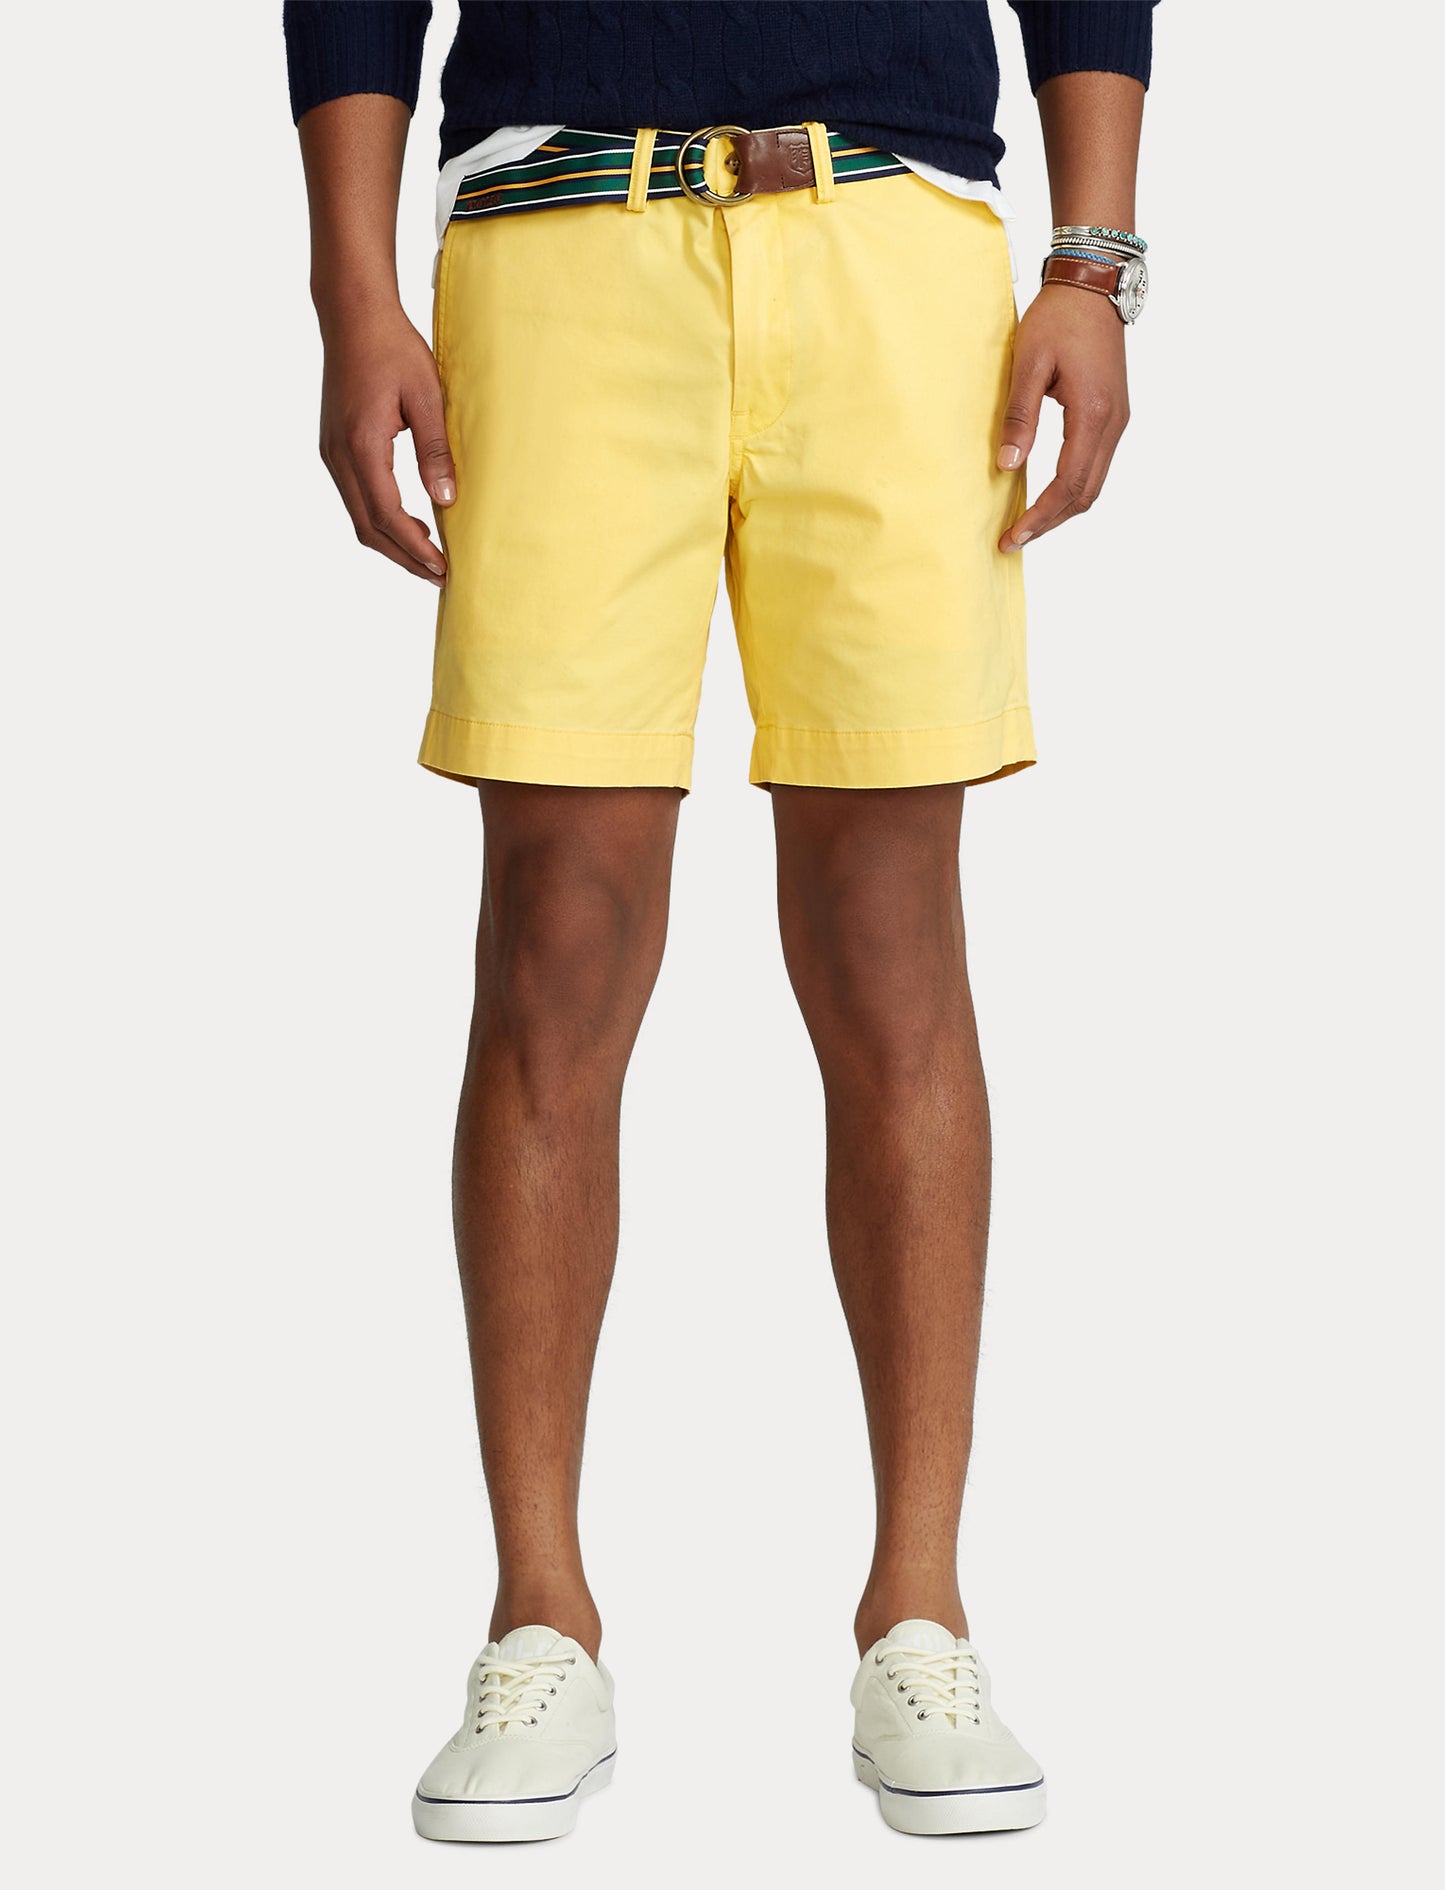 Polo Ralph Lauren Short Yellow